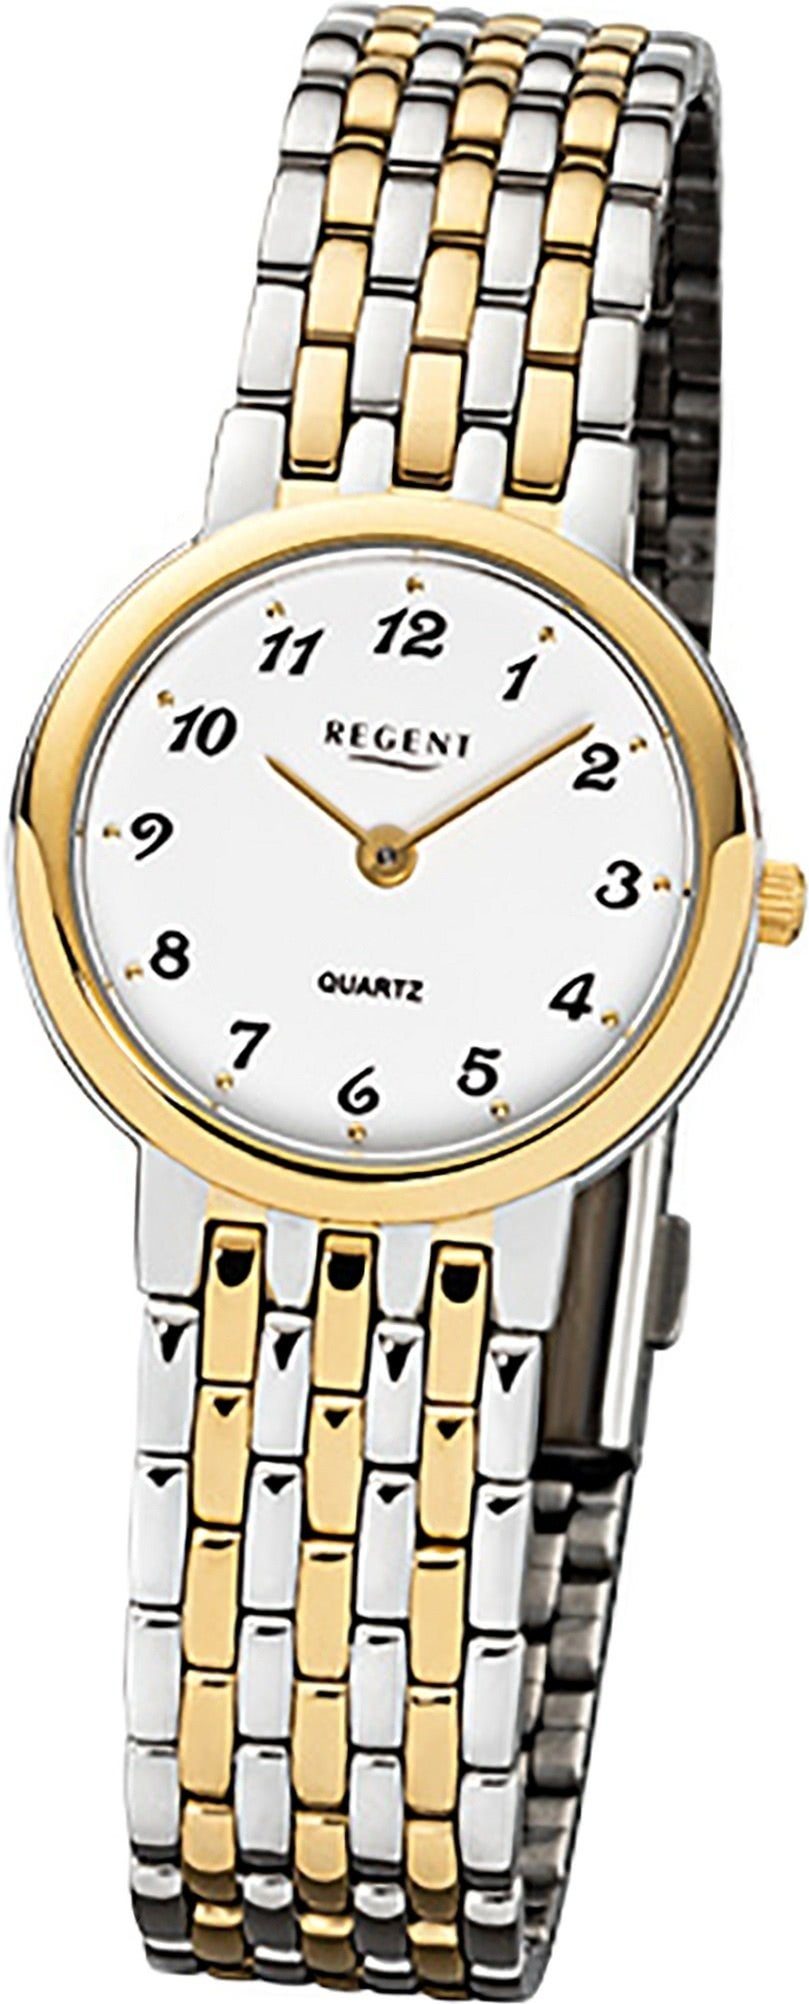 Quarzuhr gold, silber, F-1048 Edelstahlarmband (26mm) Damenuhr Damen Uhr Quarz, klein rundes Gehäuse, Regent Edelstahl Regent